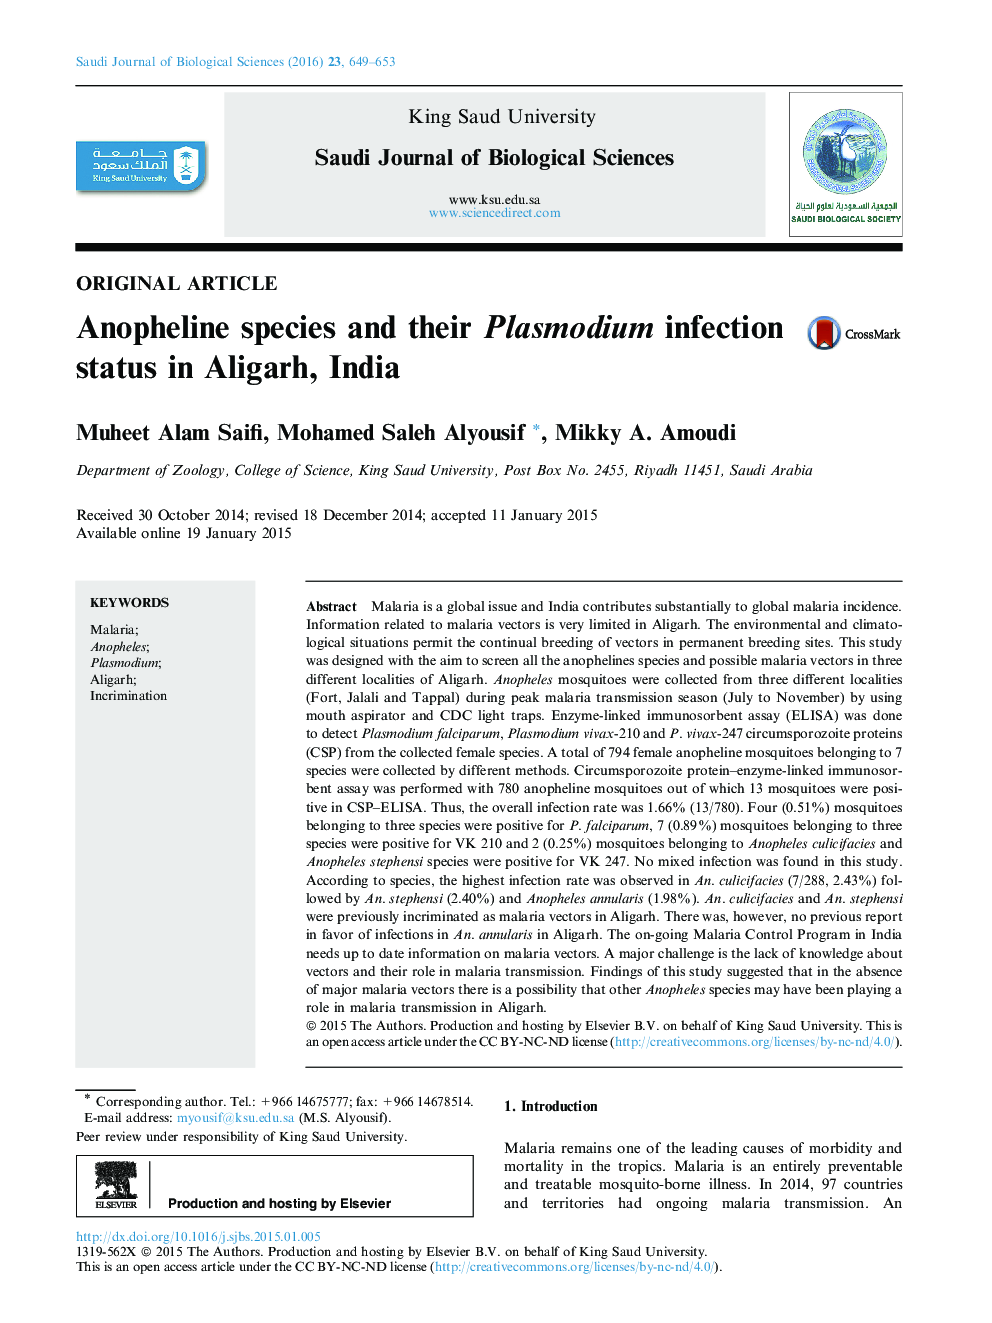 گونه های آنوفیل و وضعیت عفونت پلاسمودیوم آنها در علیگره، هند